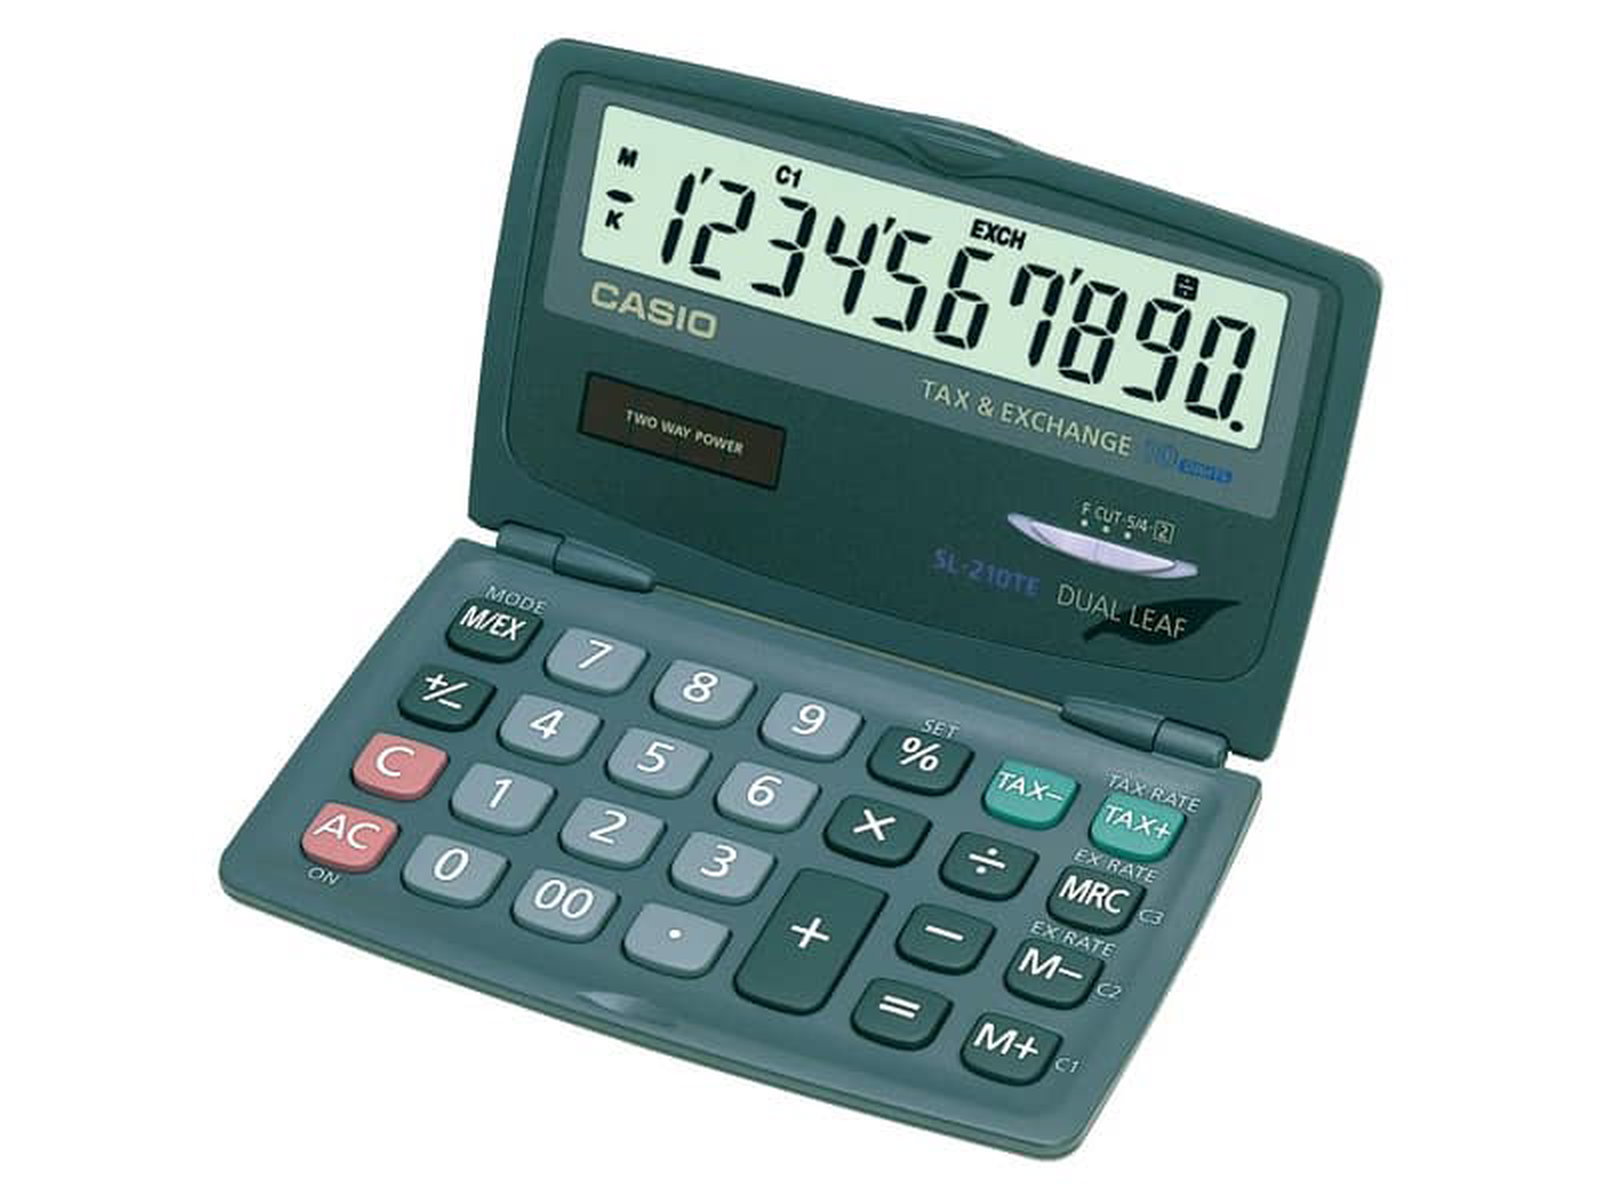 Calcolatrice scientifica HP con display a 12 cifre nero/argento  HP-10BIIPLUS/UUZ